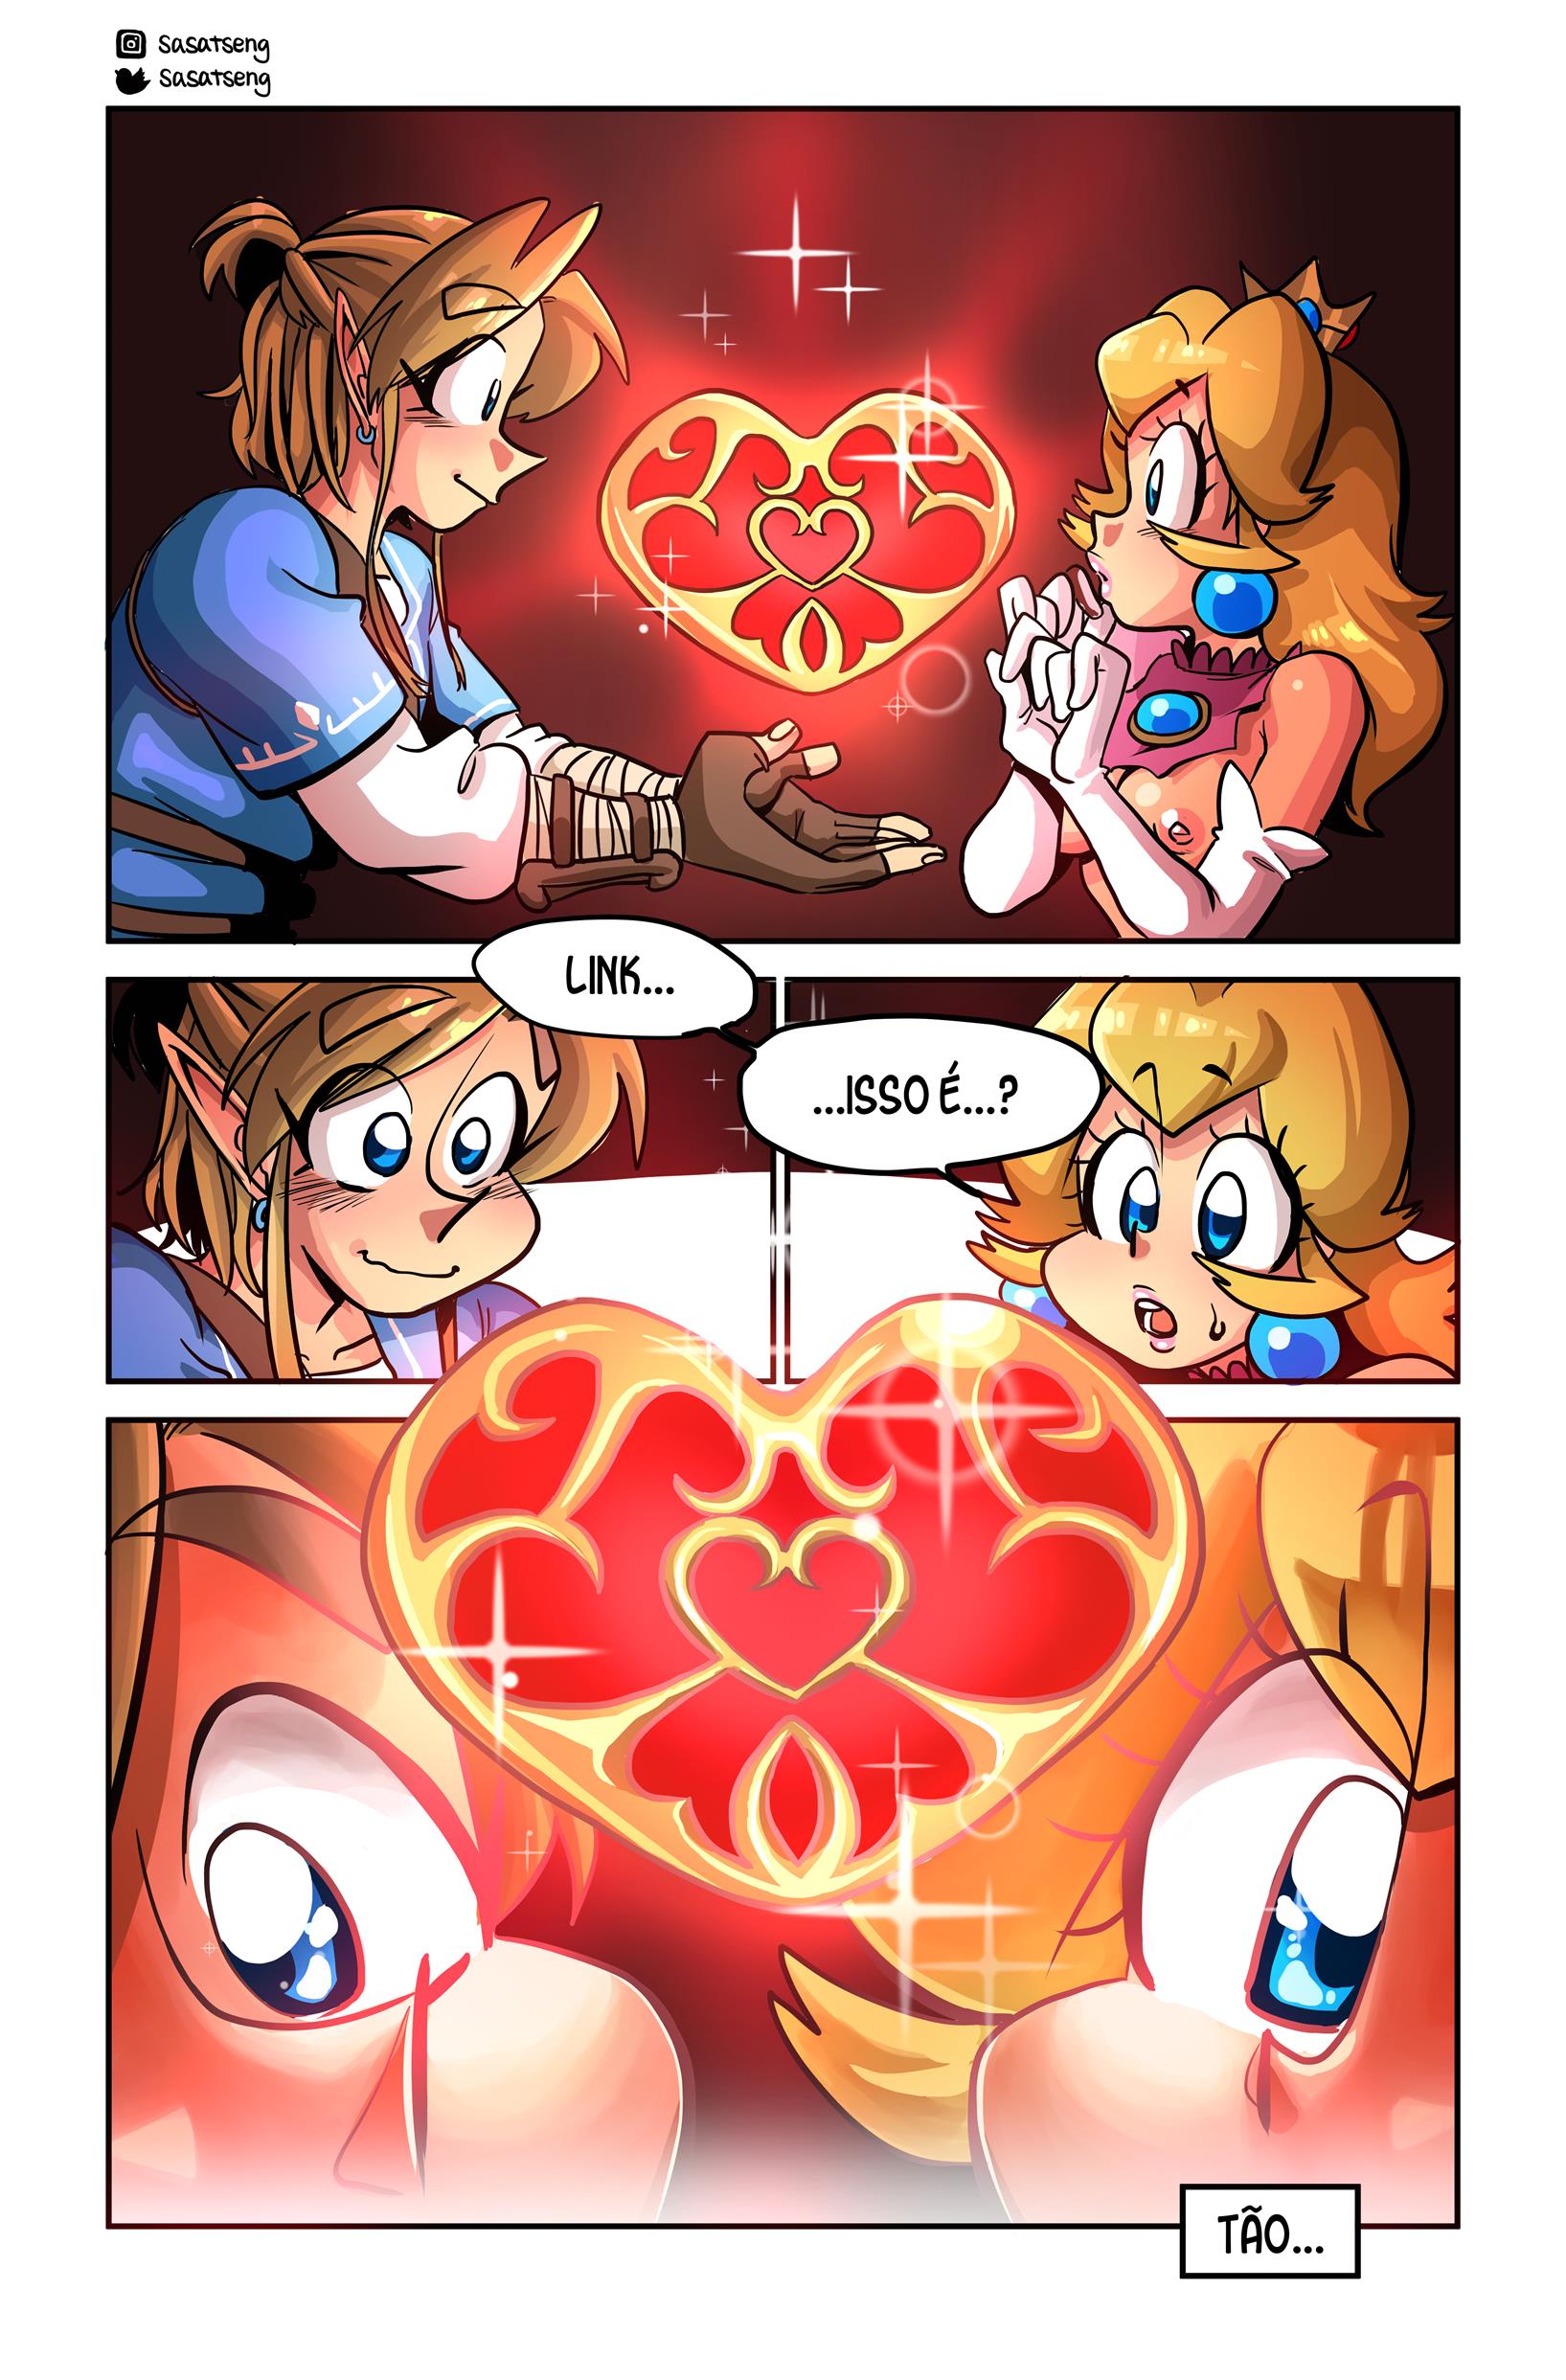 Link estupra à princesa Peach